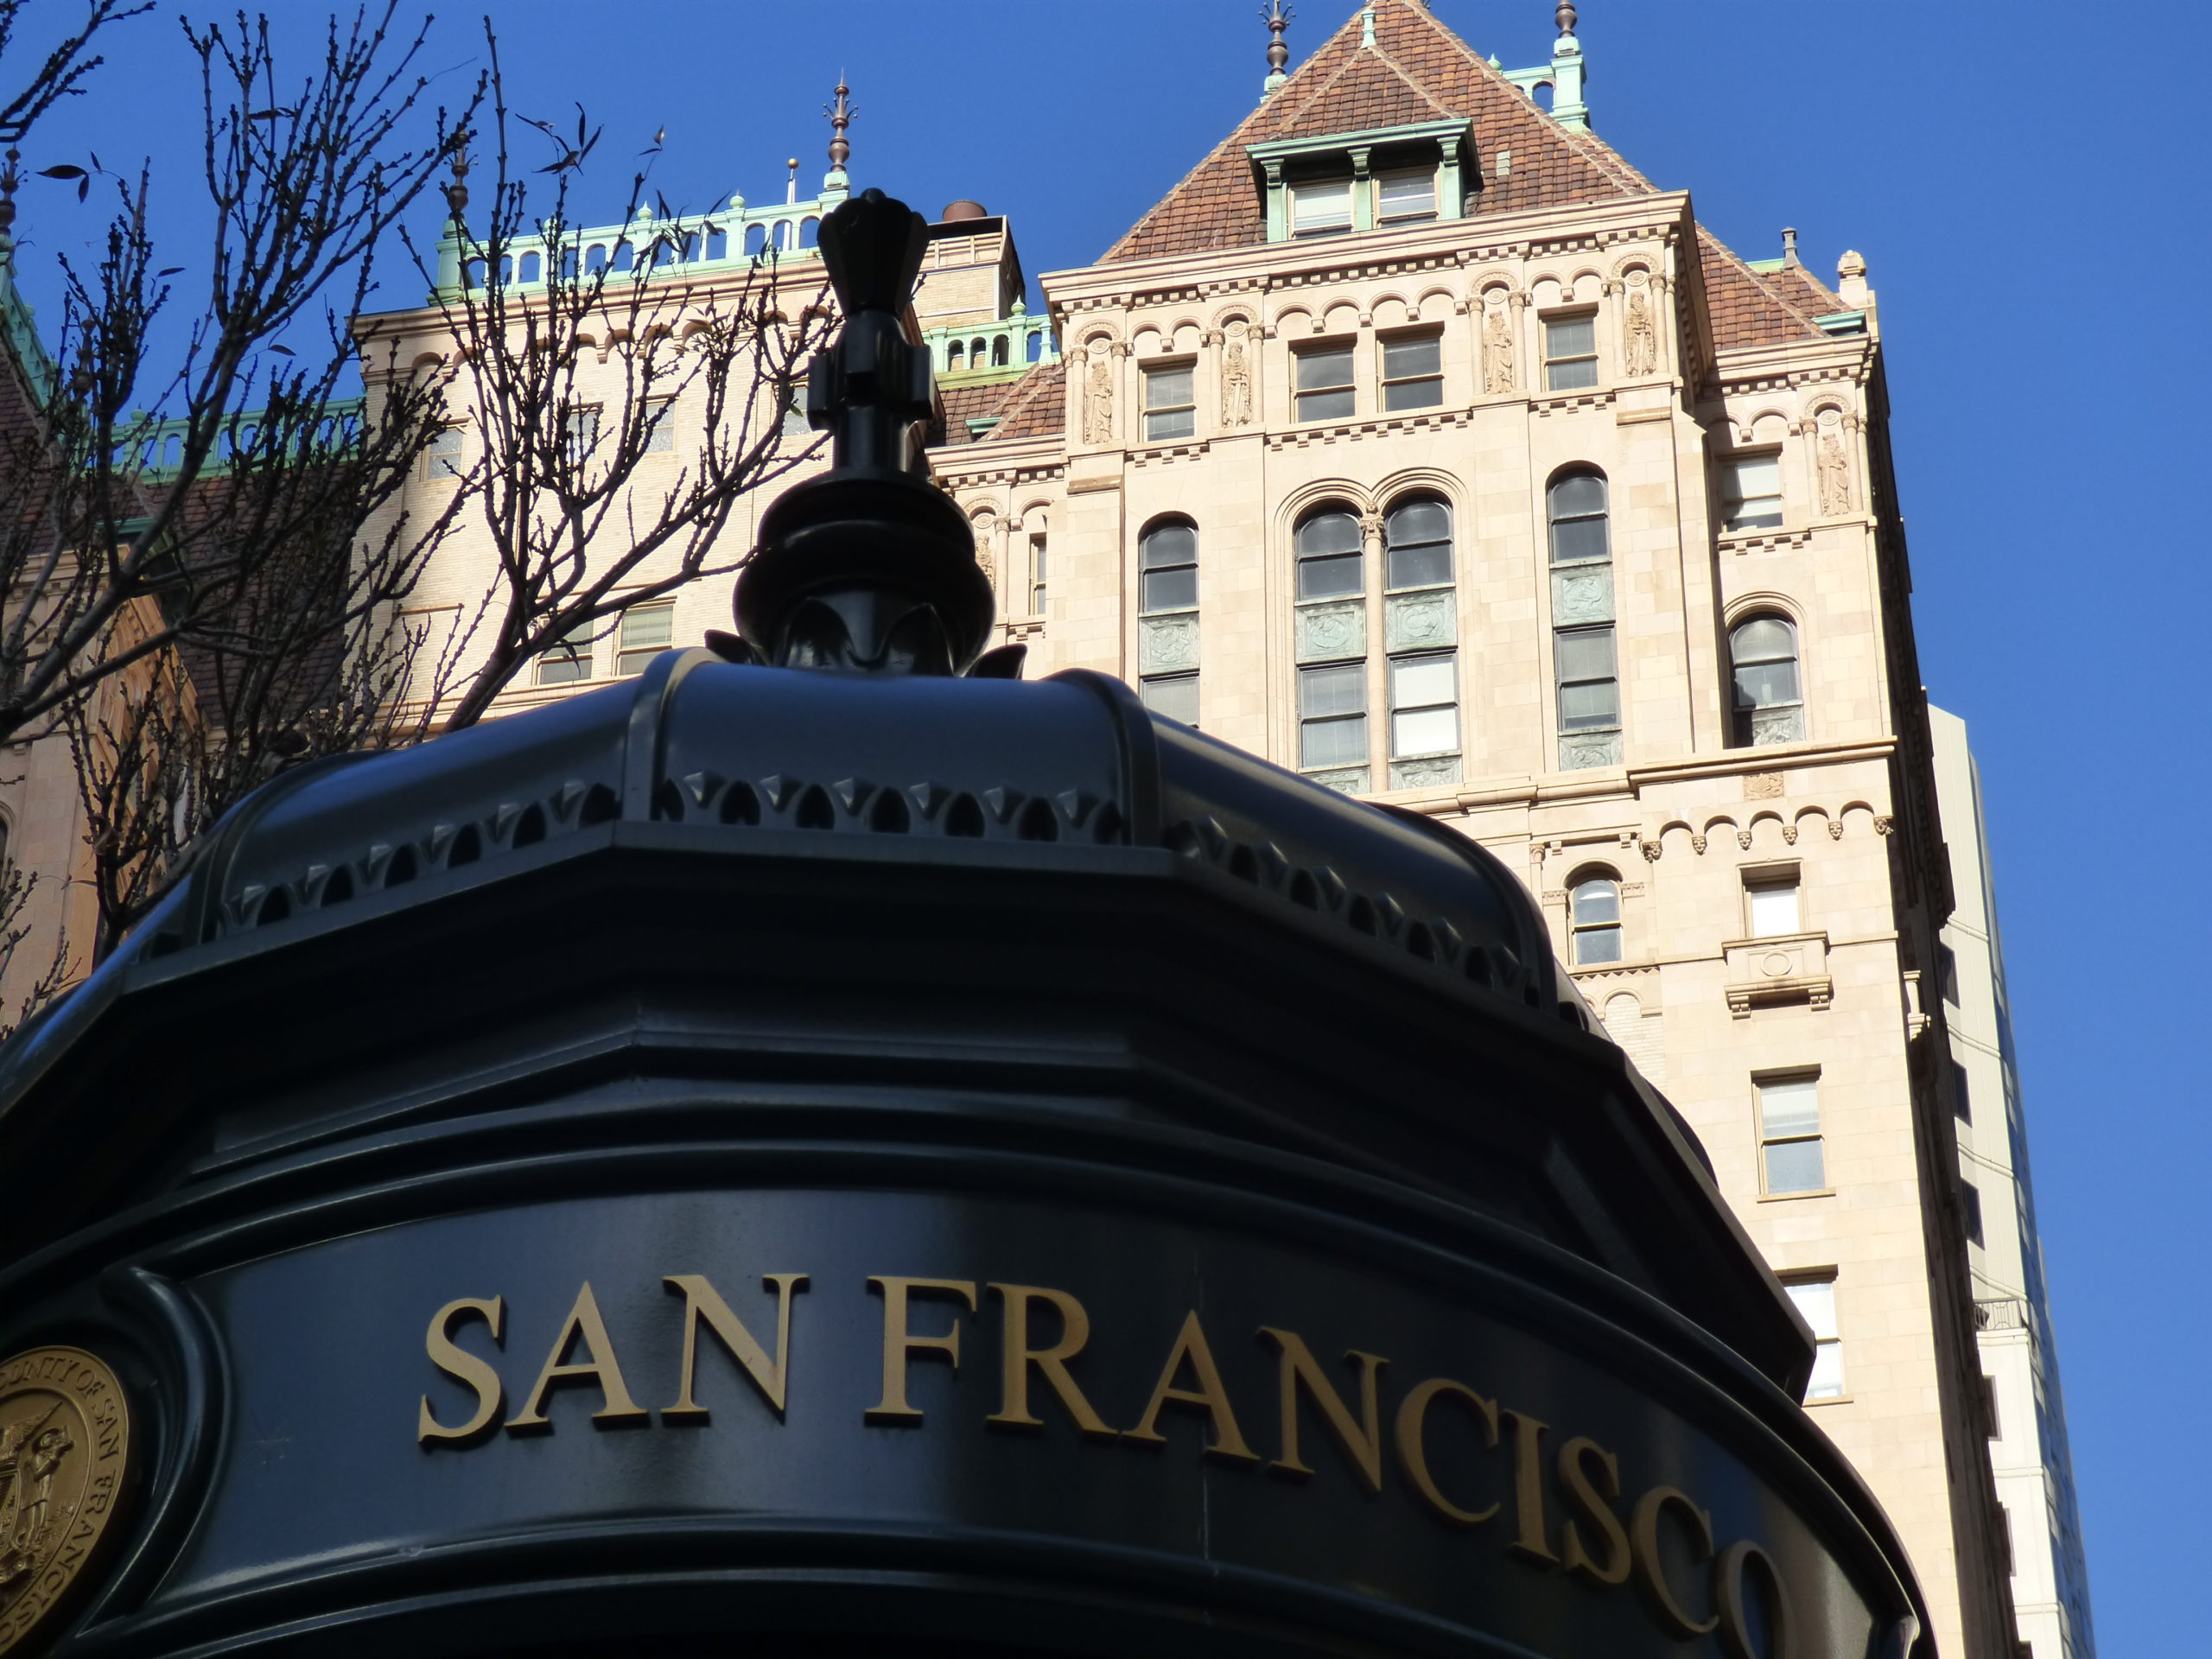 Visiter San Francisco